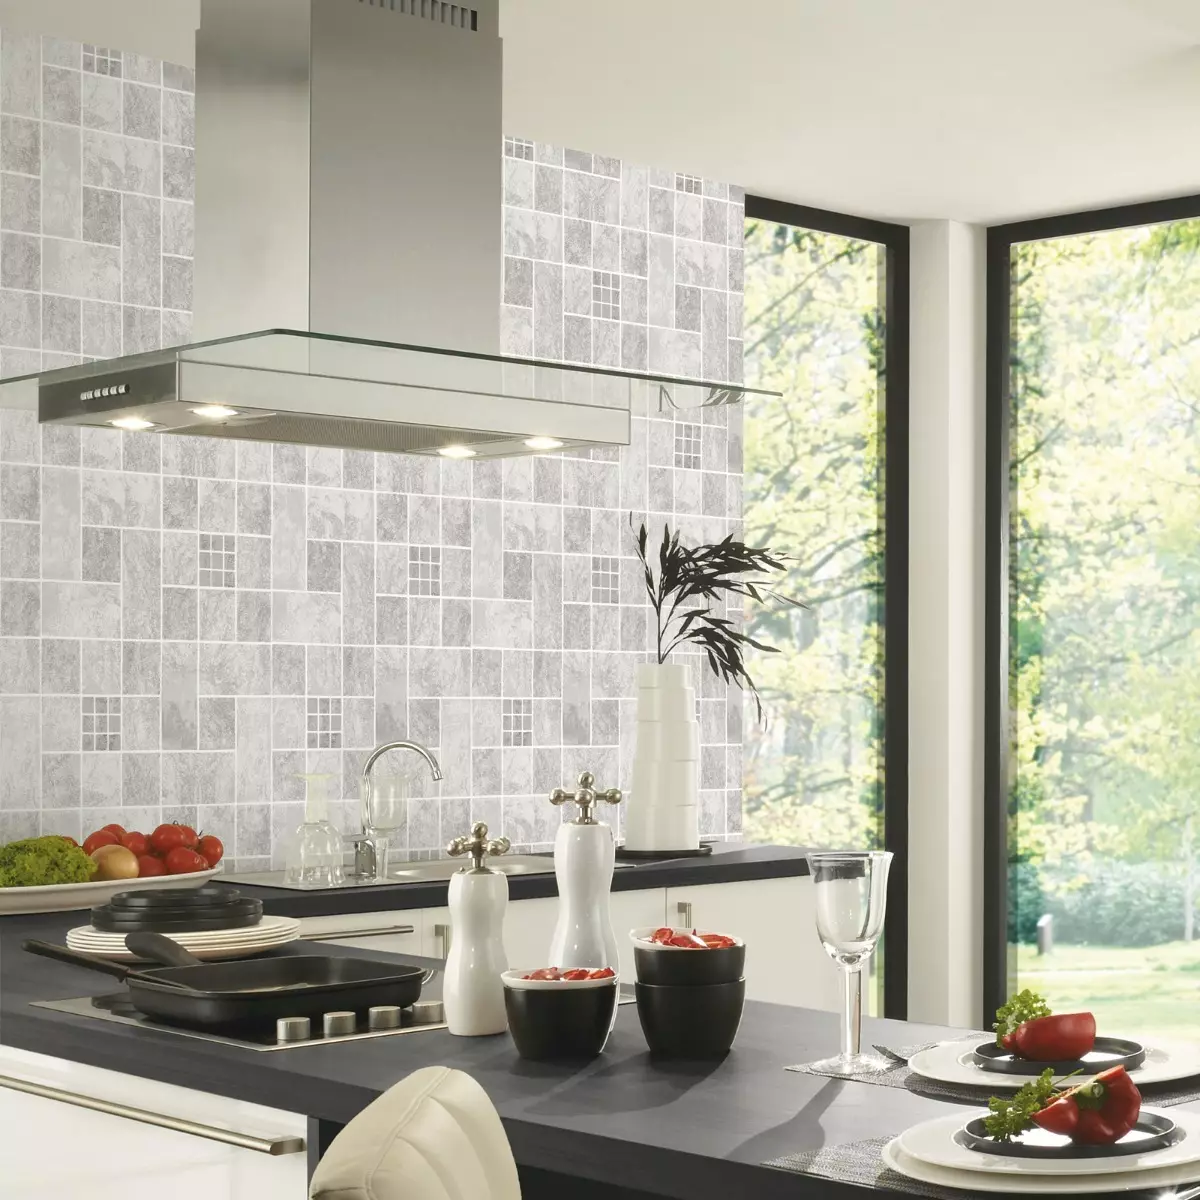 Hình nền cho nhà bếp (102 ảnh): Thiết kế hình nền nhà bếp cho tường bếp trong căn hộ, đẹp sáng, sáng và các tùy chọn hình nền khác trong nội thất 21113_49